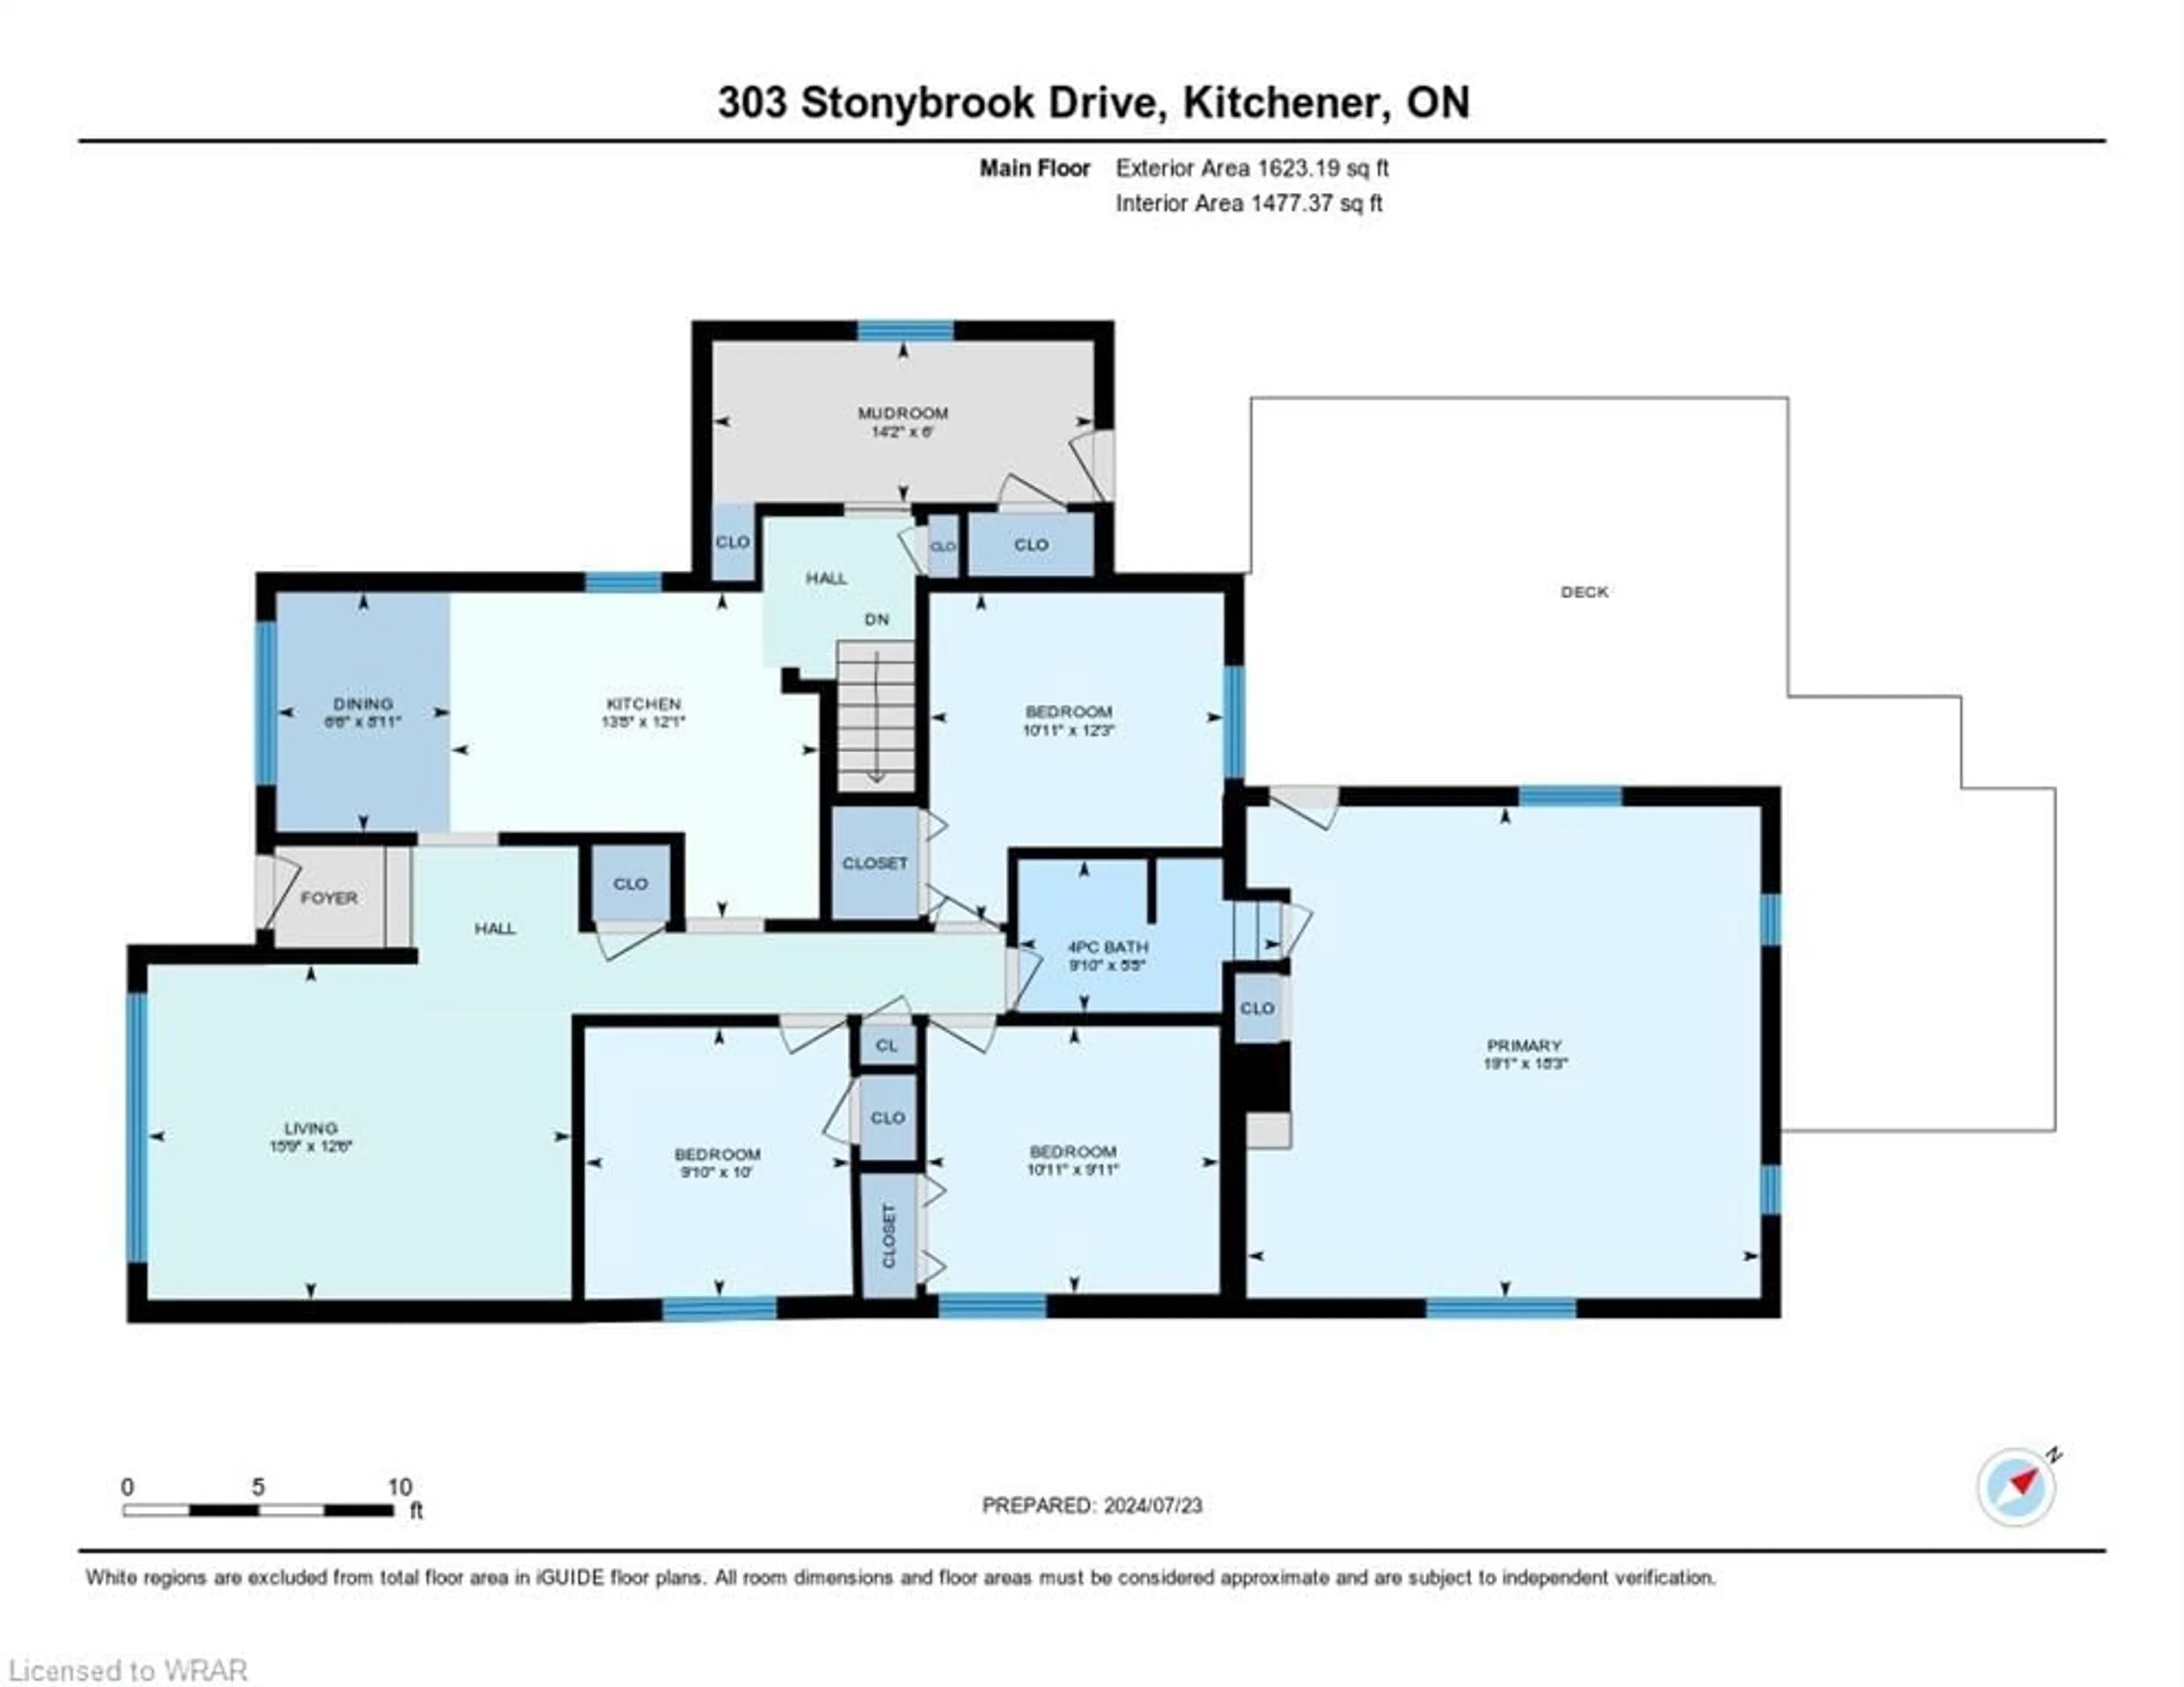 Floor plan for 303 Stonybrook Dr, Kitchener Ontario N2M 4L8